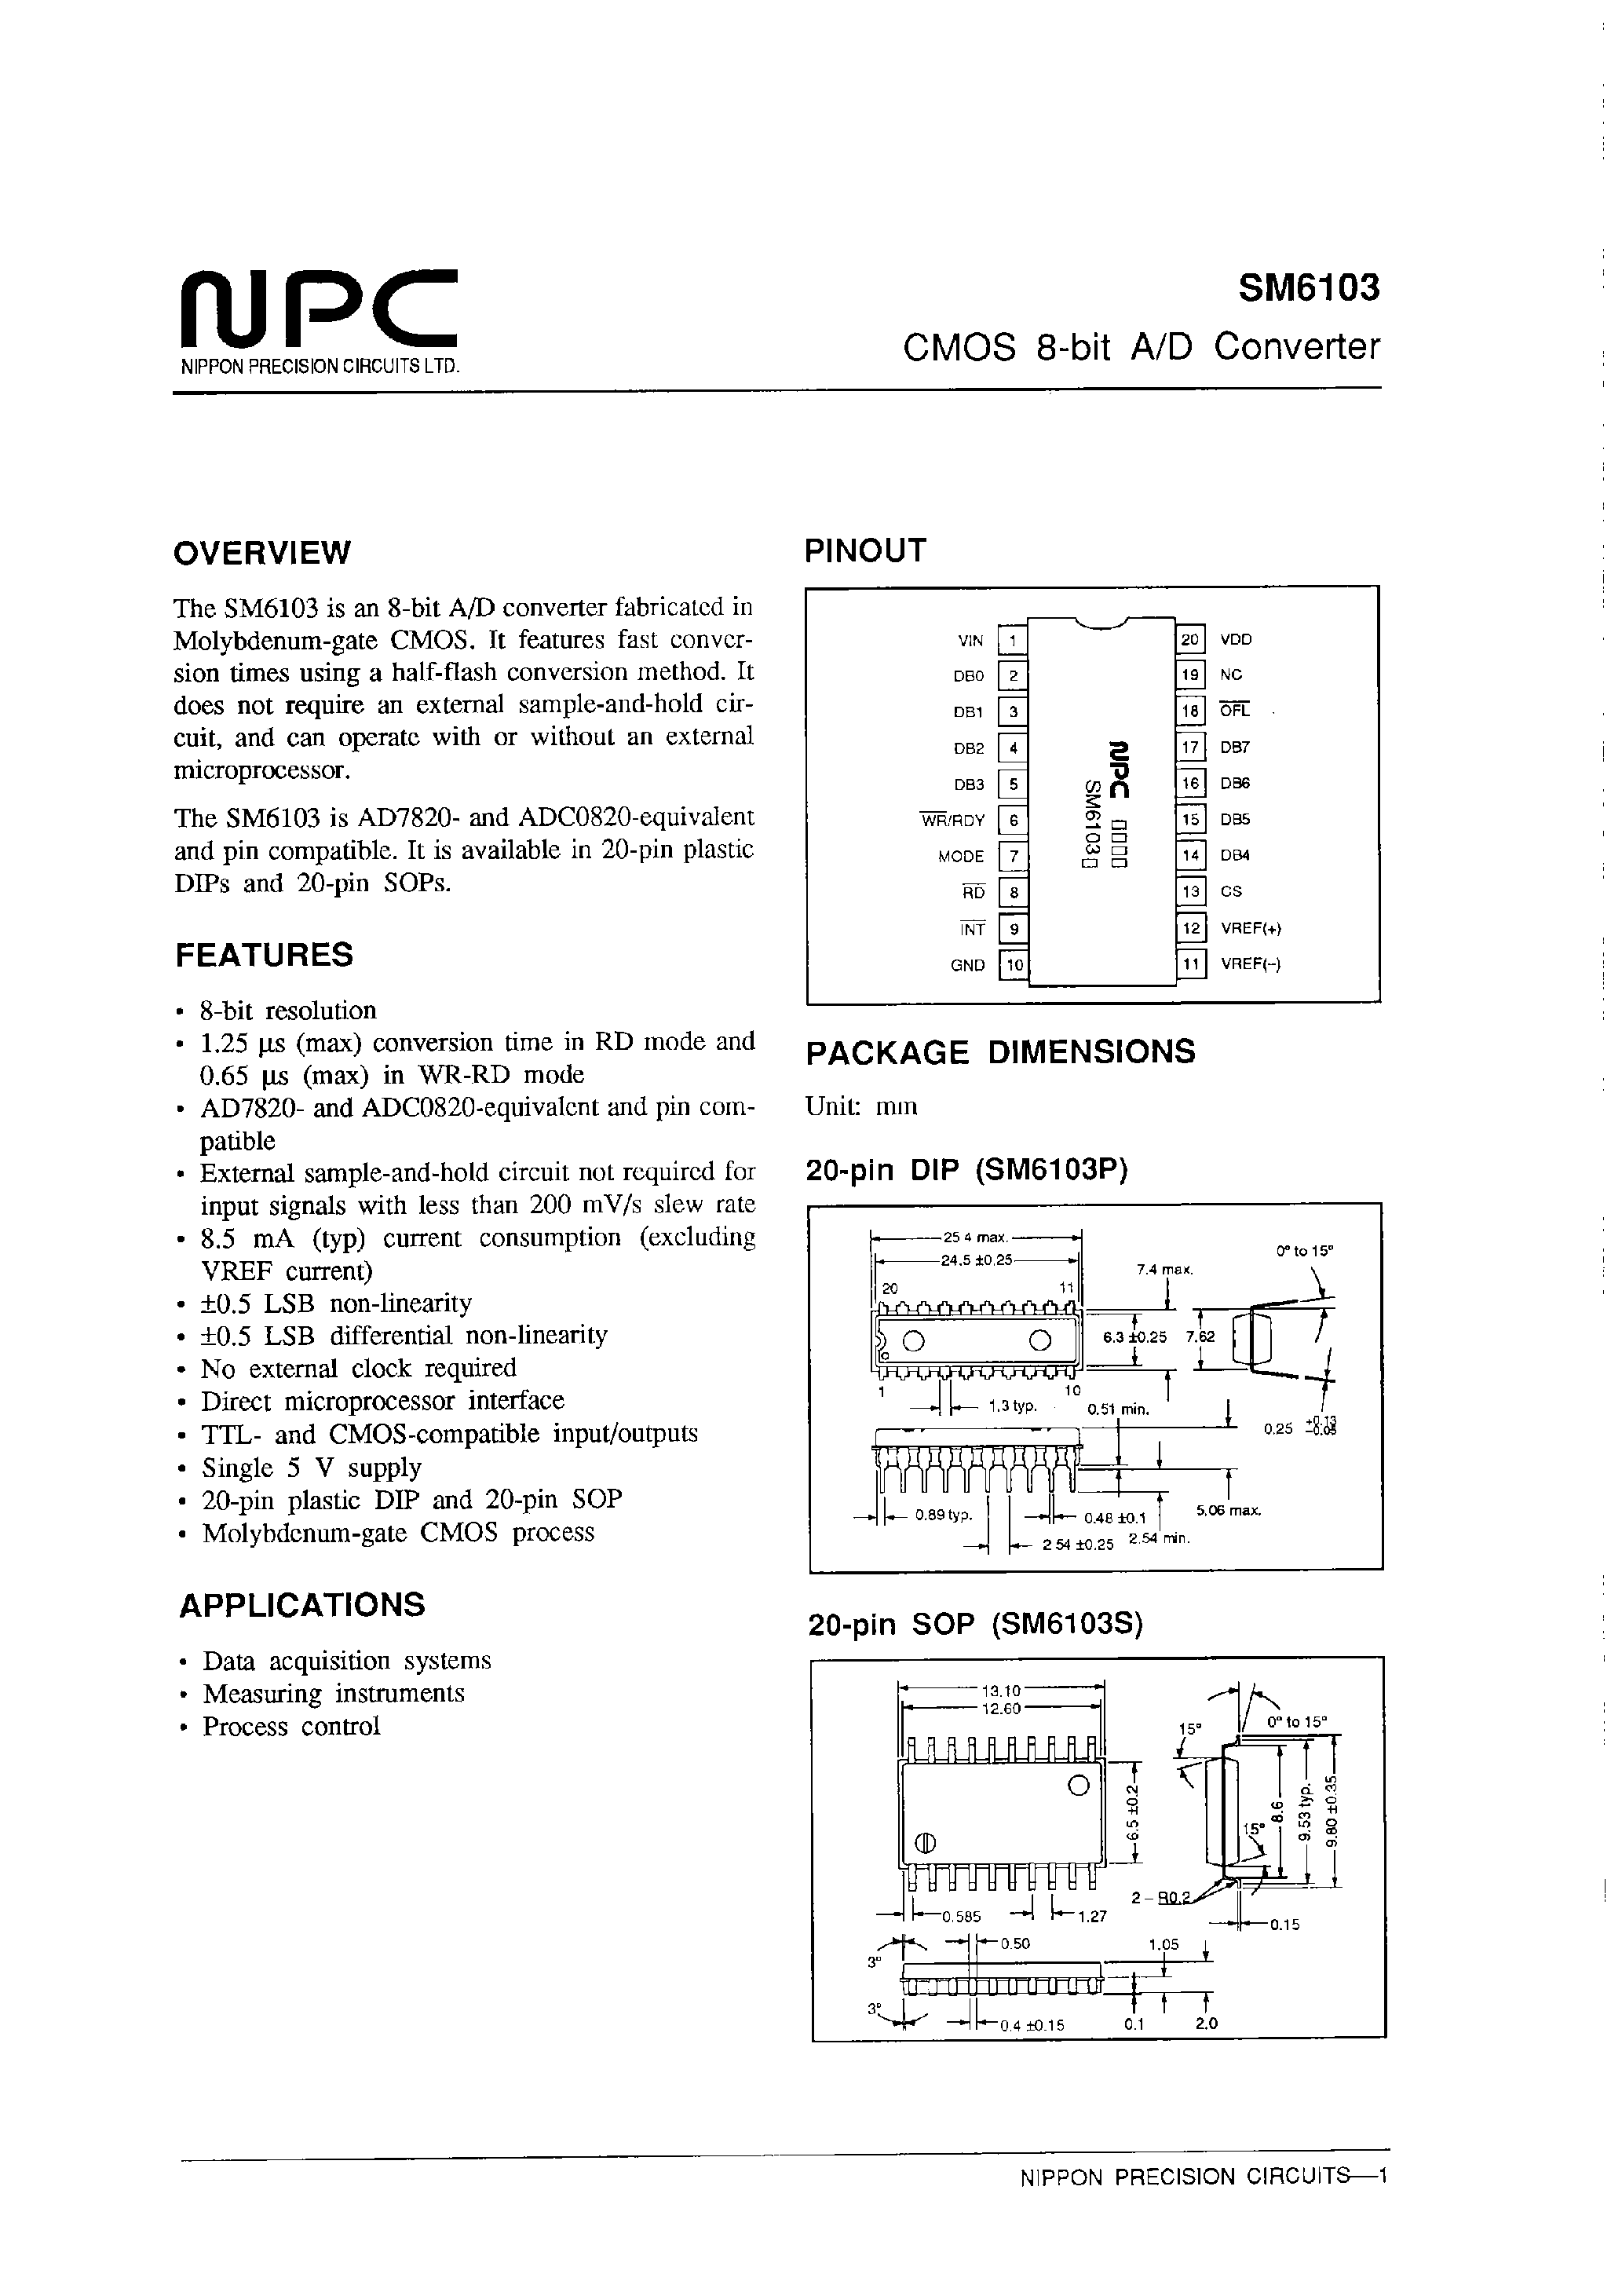 Даташит SM6103 - CMOS 8-bit A/D Converter страница 1